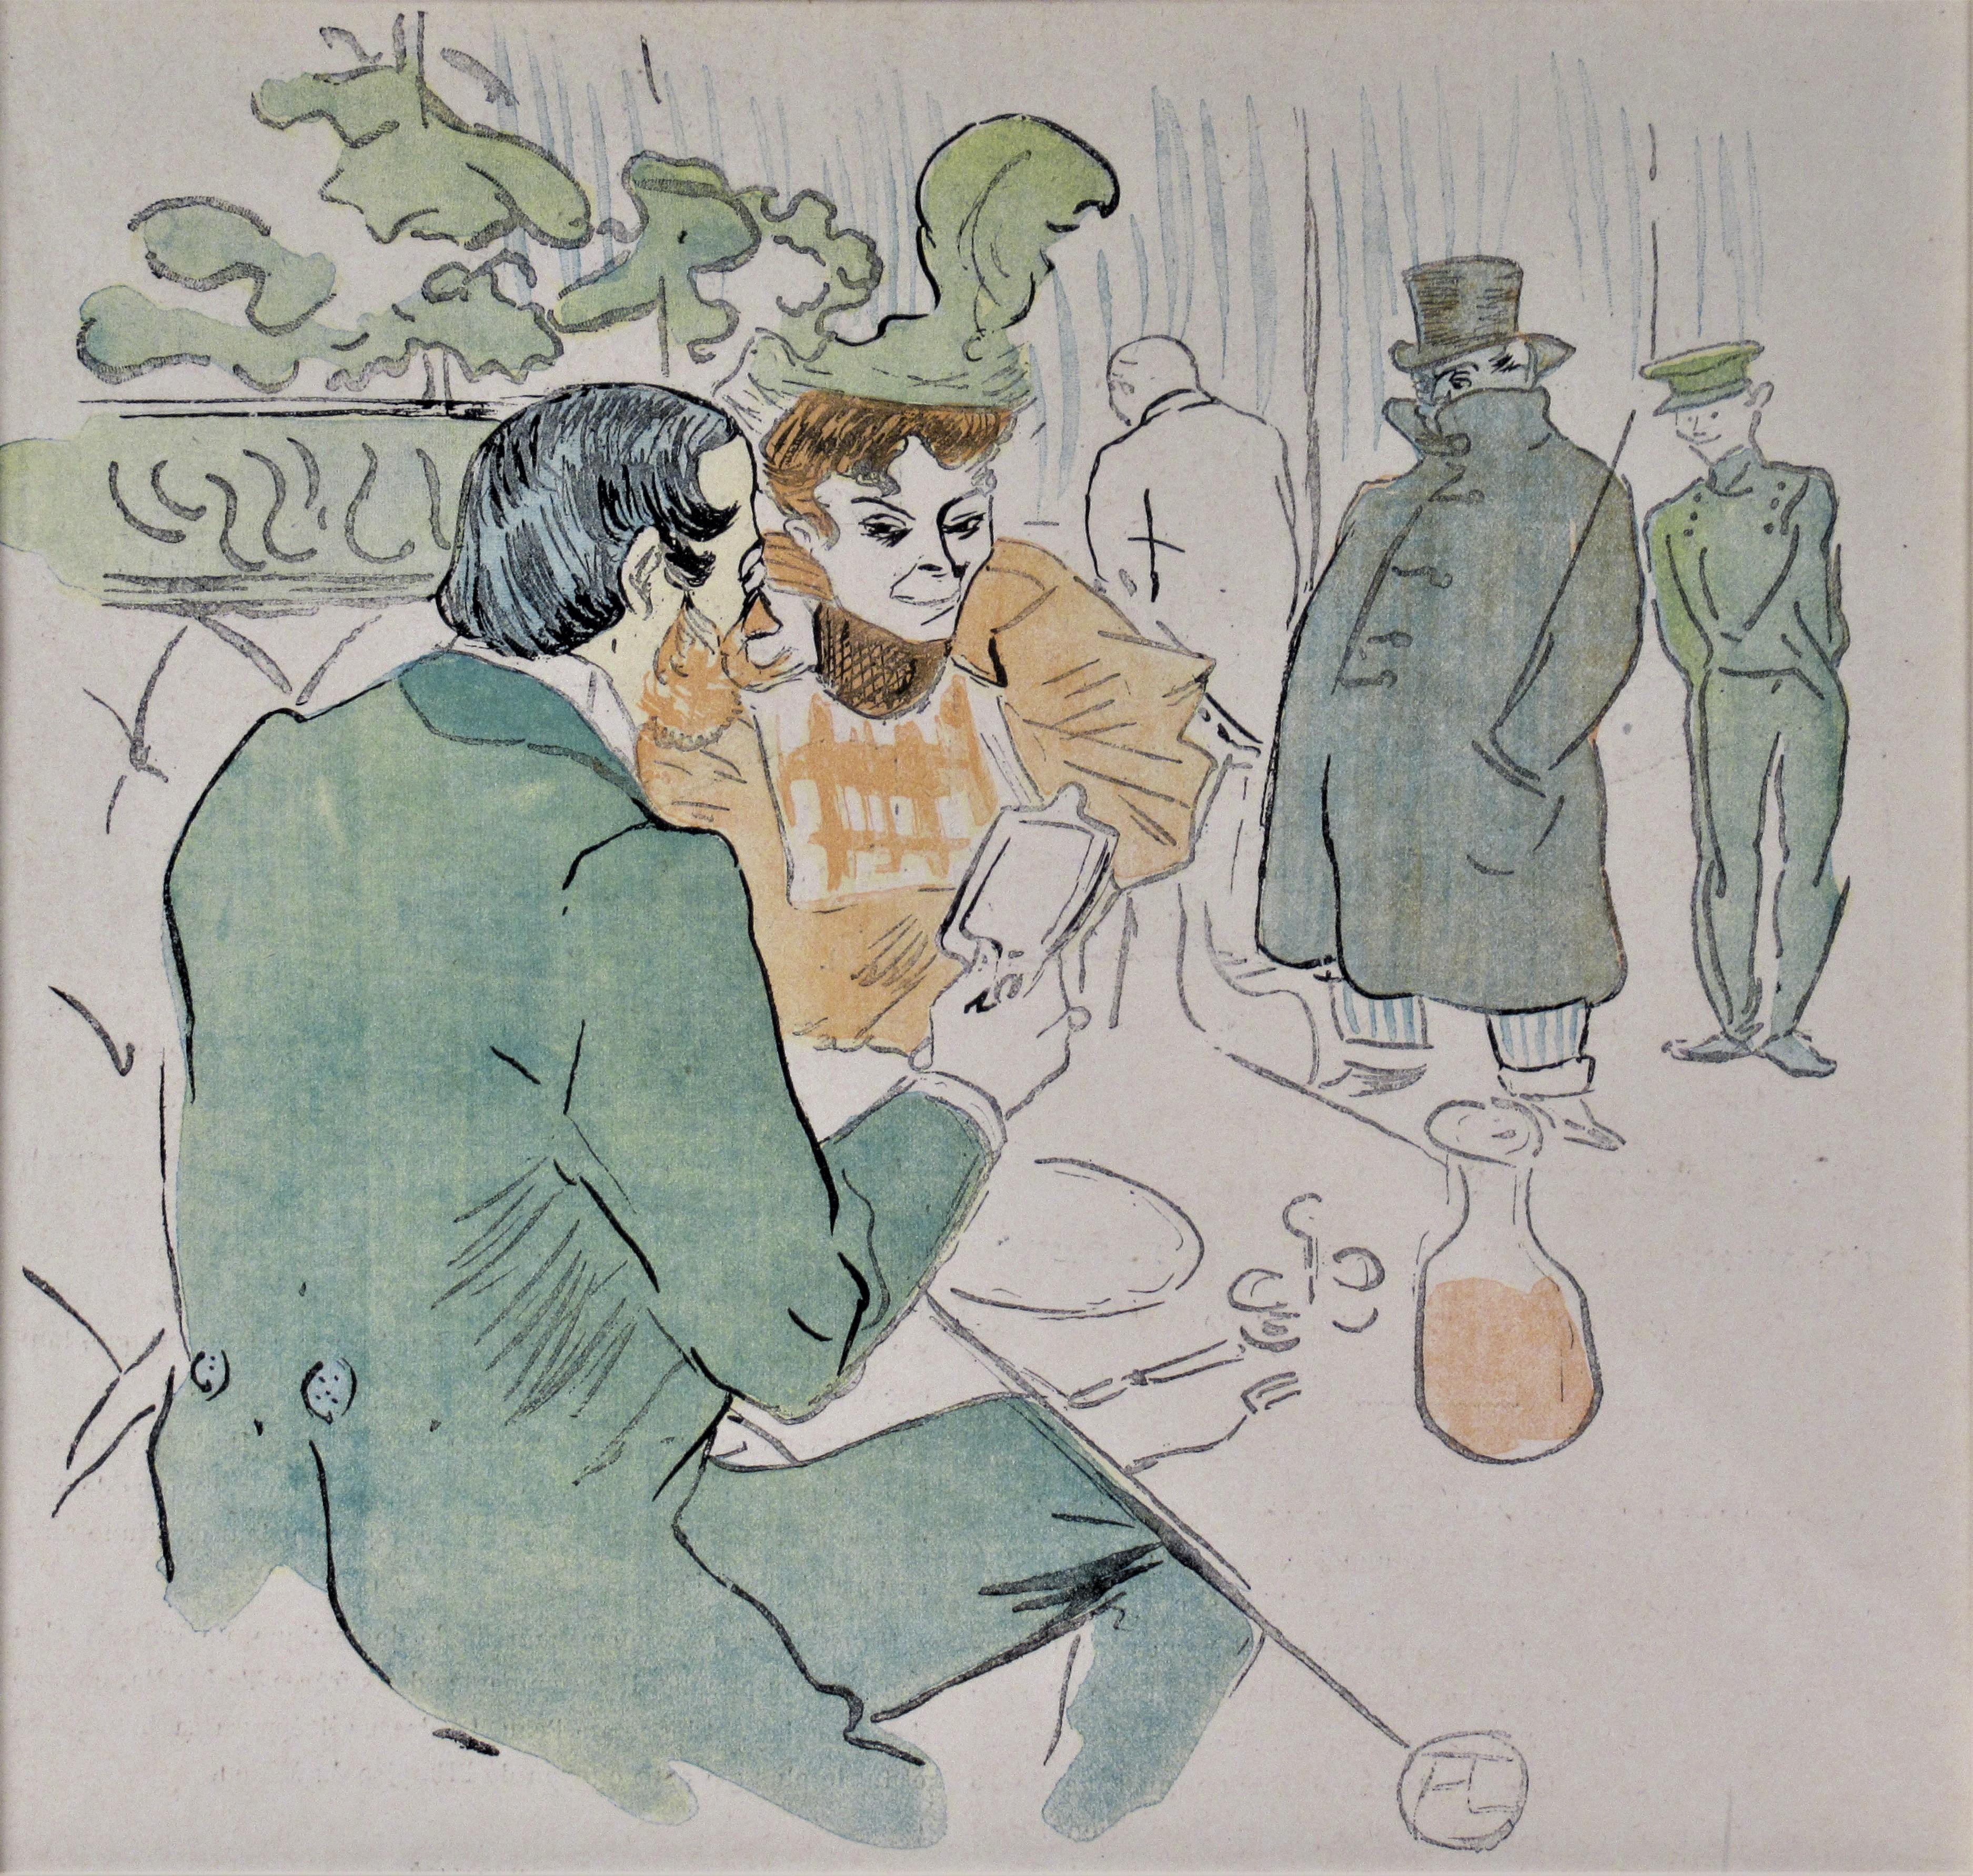 Snobisme - Print by Henri de Toulouse-Lautrec